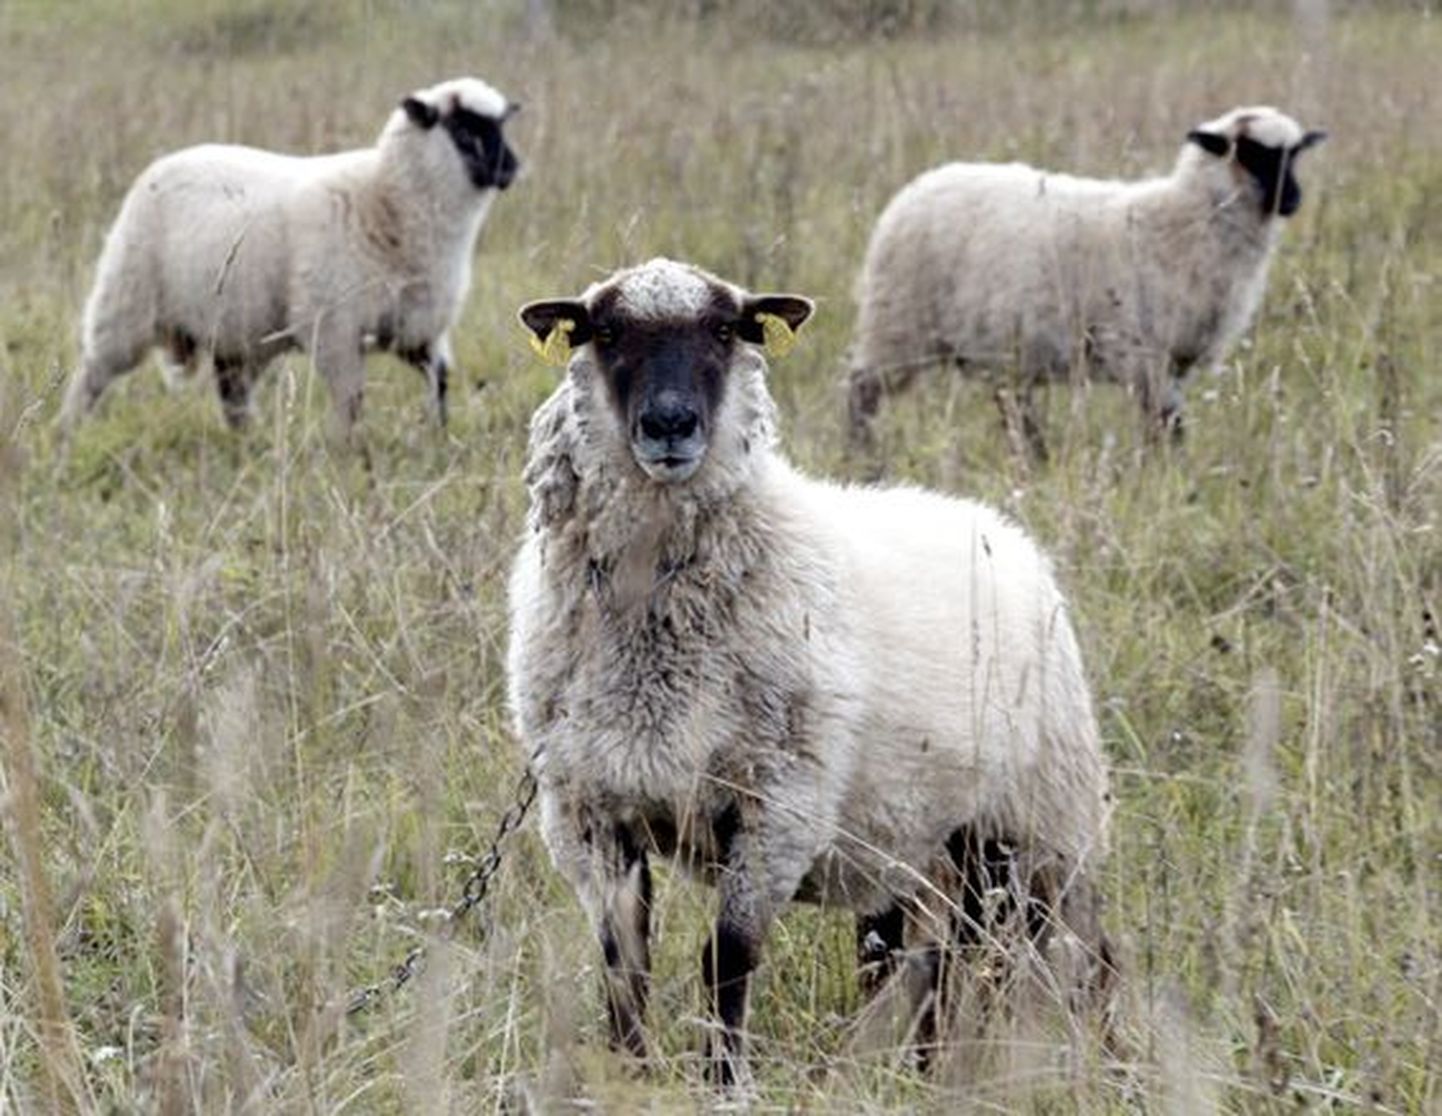 Kui muude põllumajandusloomade arv on Lääne-Virumaal pigem kahanenud, siis lammaste arv on maakonnas kolme aasta jooksul ligi kaks korda suurenenud.